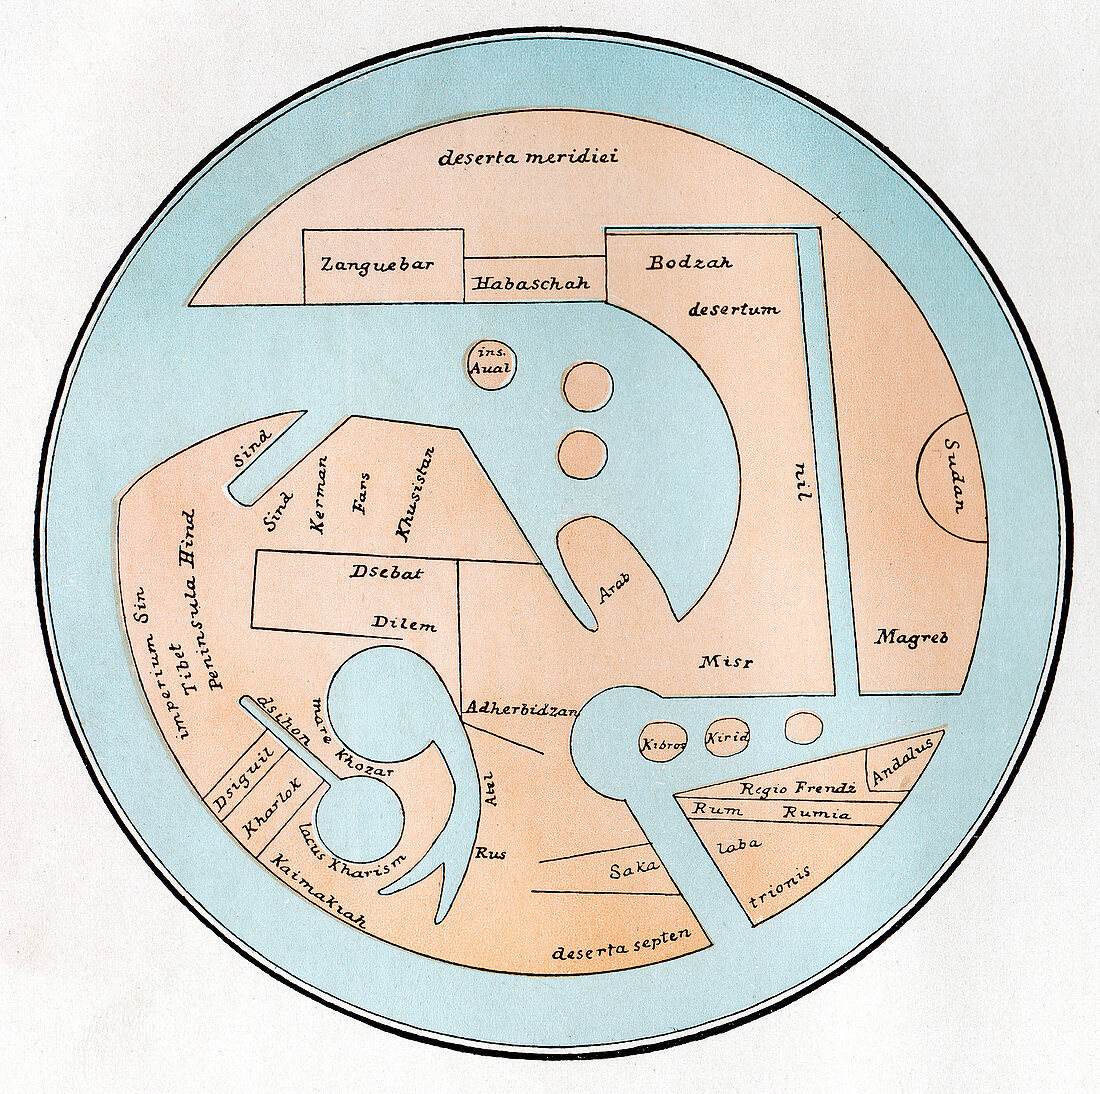 The Globe of Estakhri,historical artwork